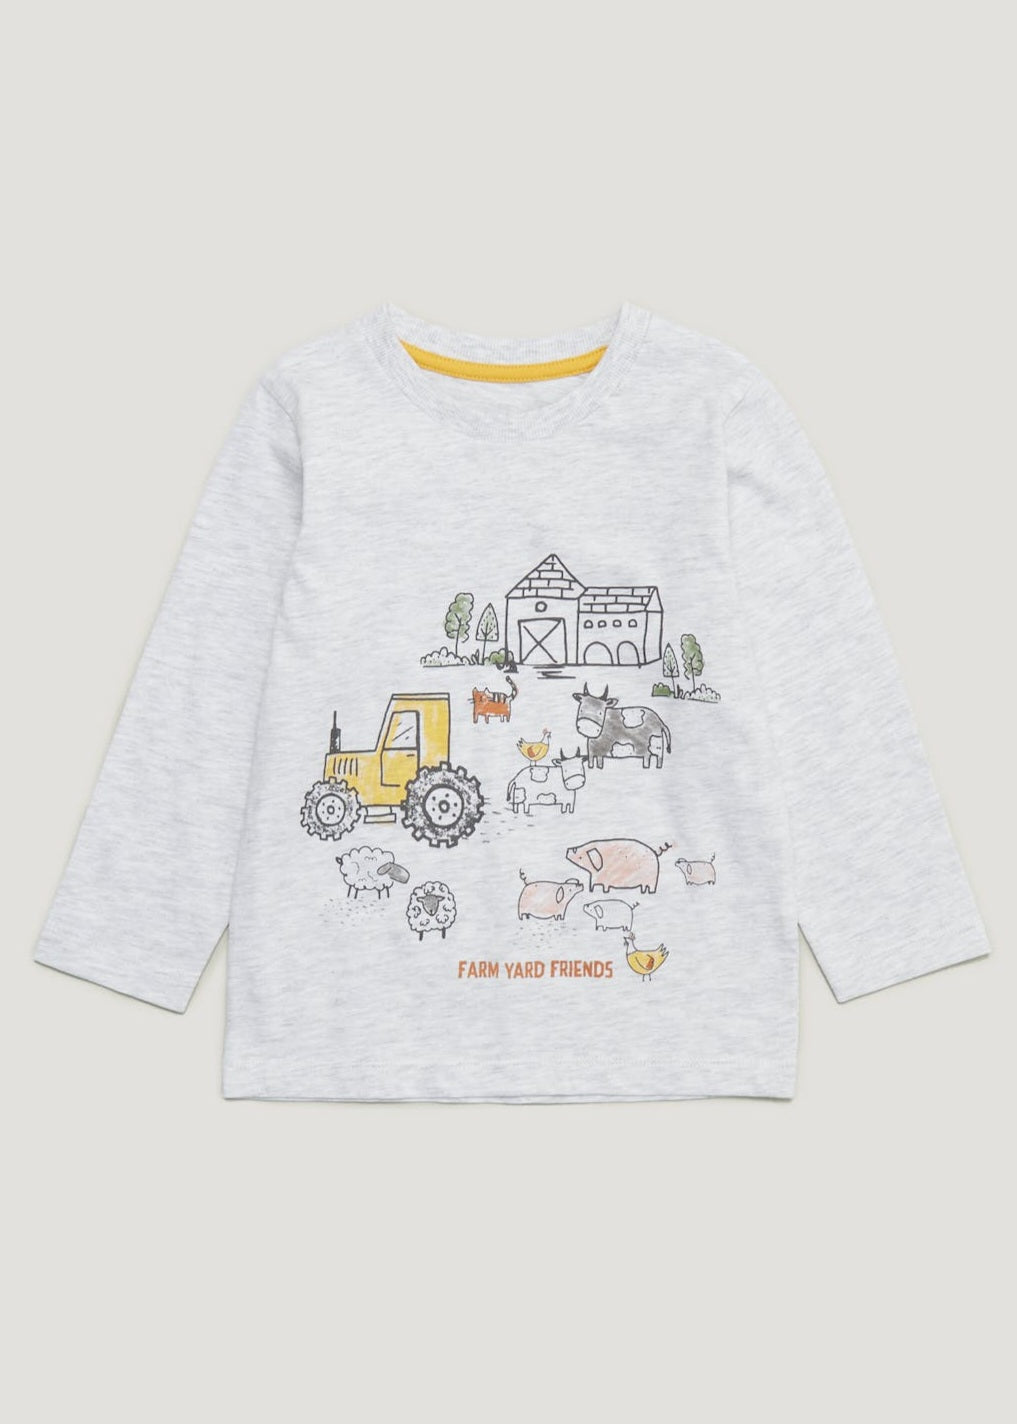 Boys Grey Marl Farm T-shirt